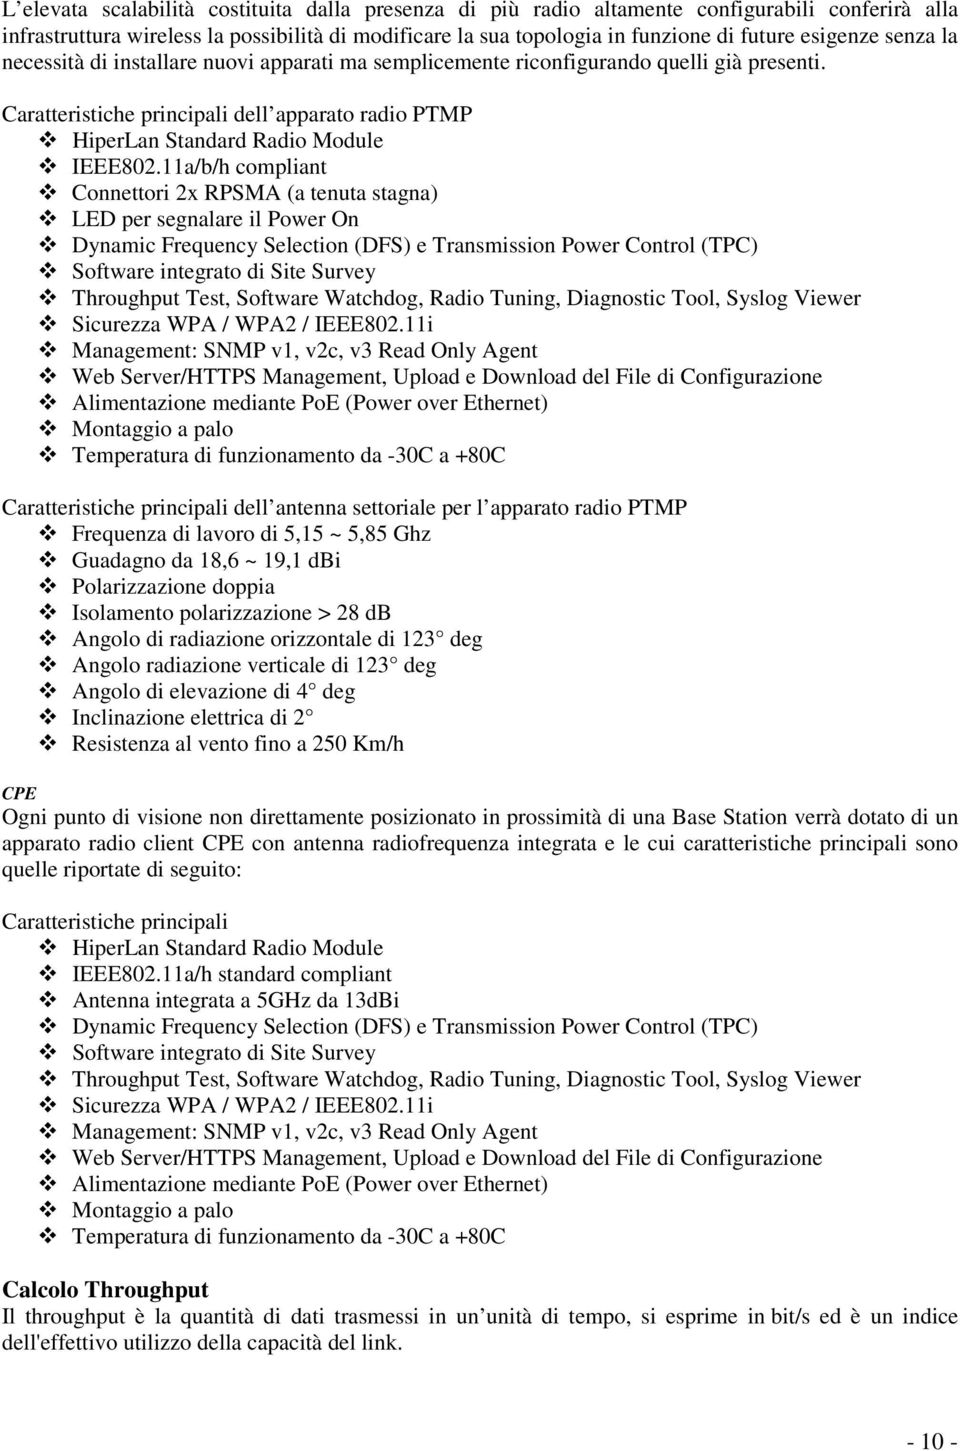 Caratteristiche principali dell apparato radio PTMP HiperLan Standard Radio Module IEEE802.